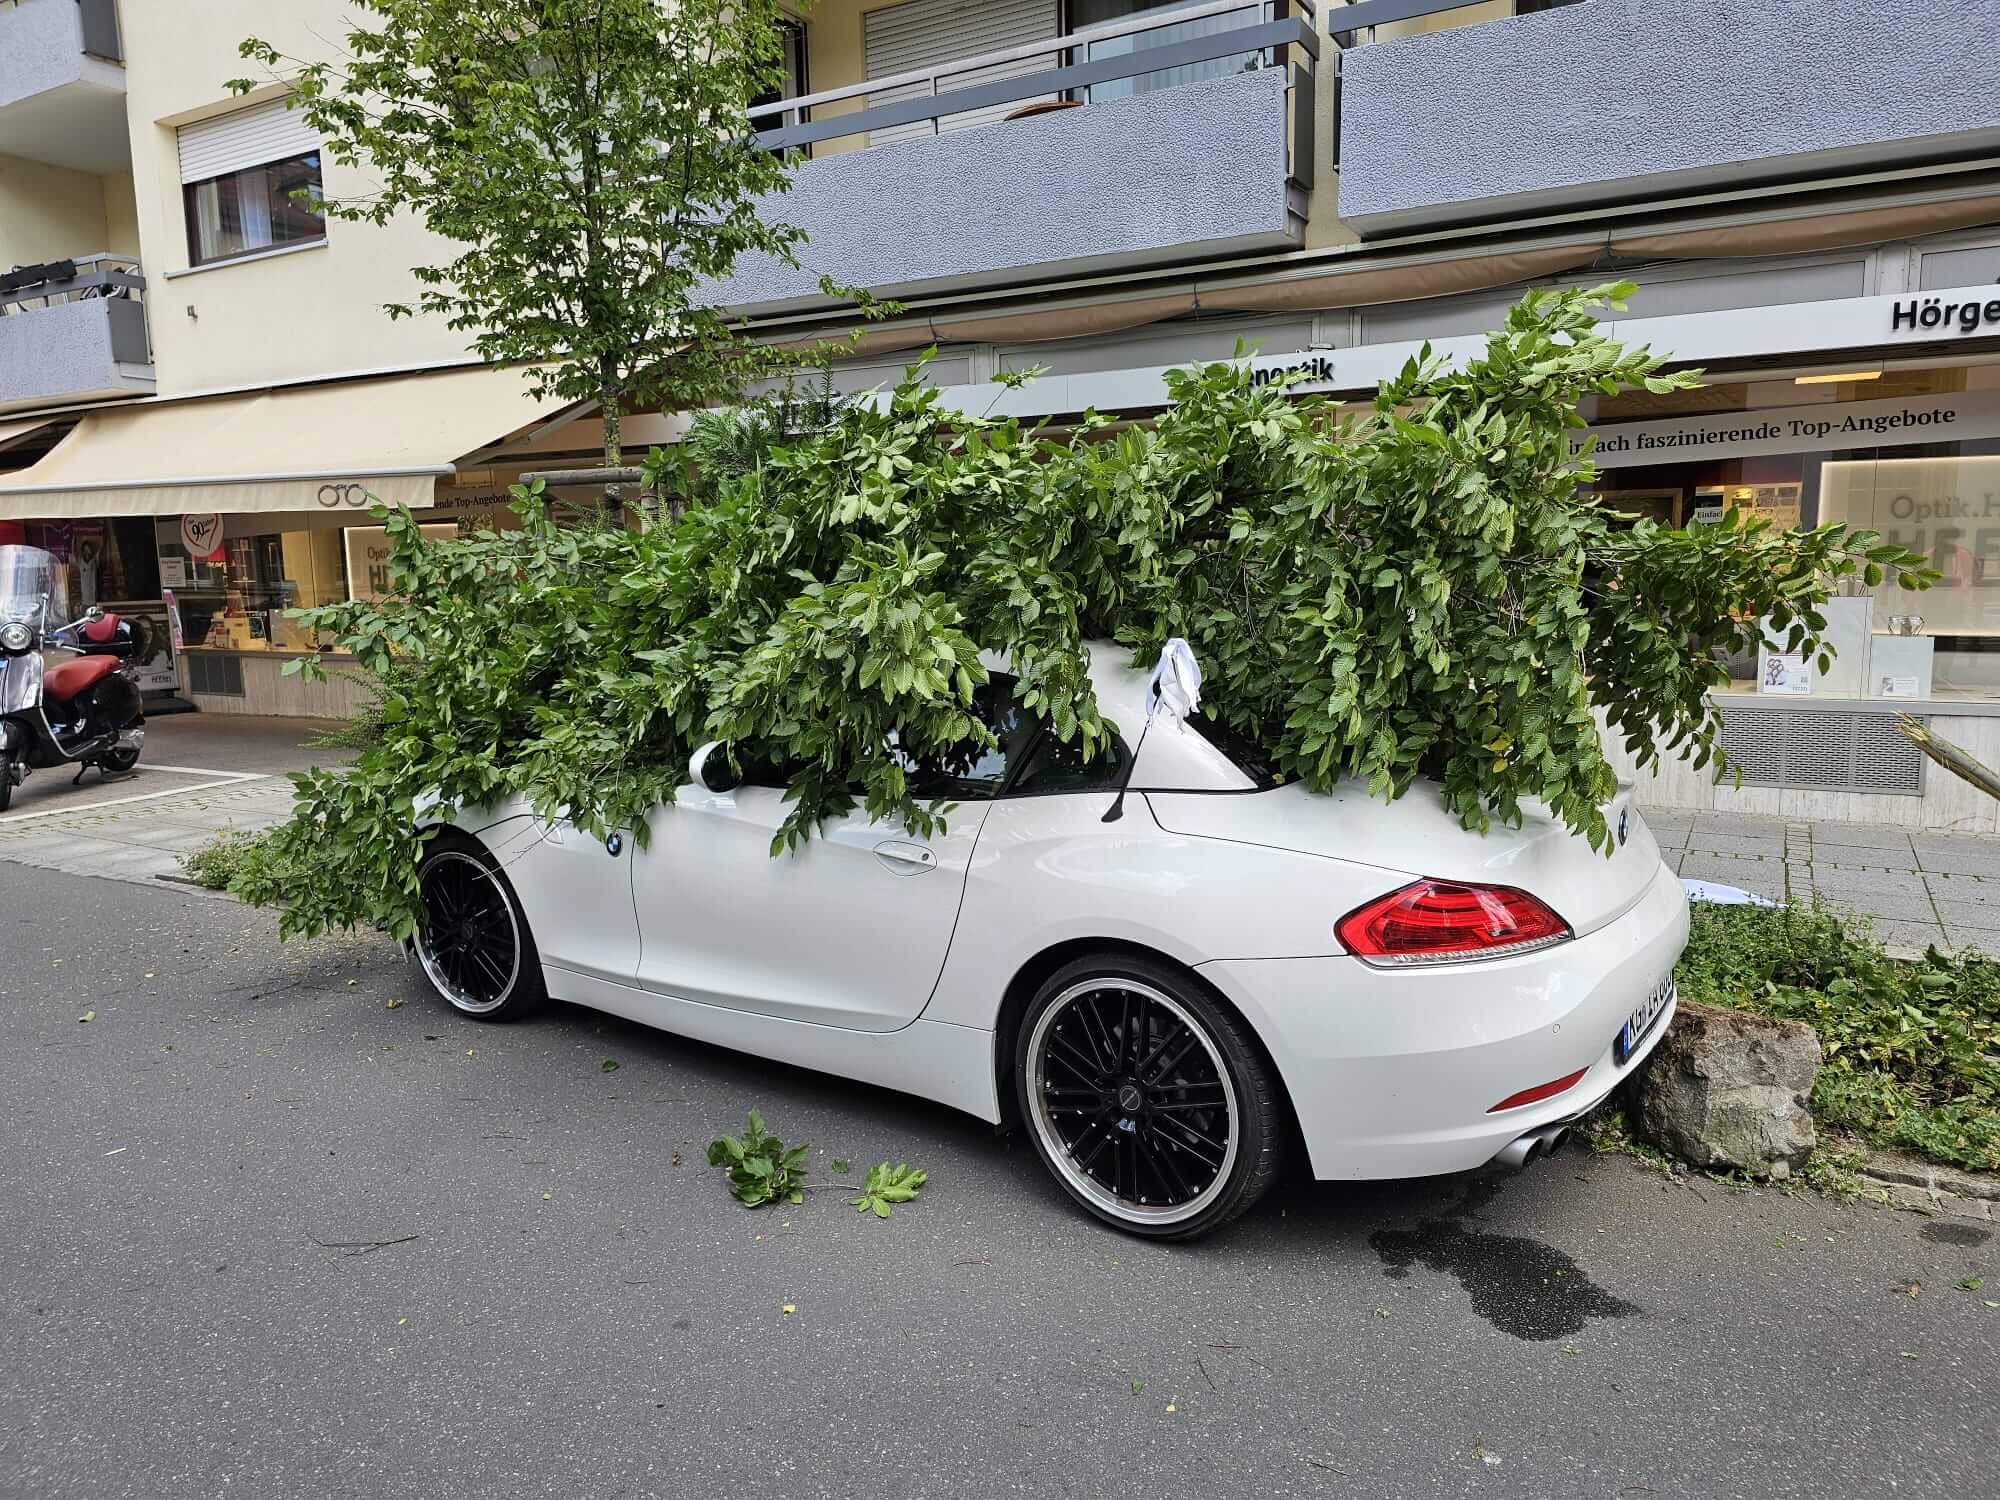 Bad Kissingen: Frau stößt gegen Auto und fährt Baum um